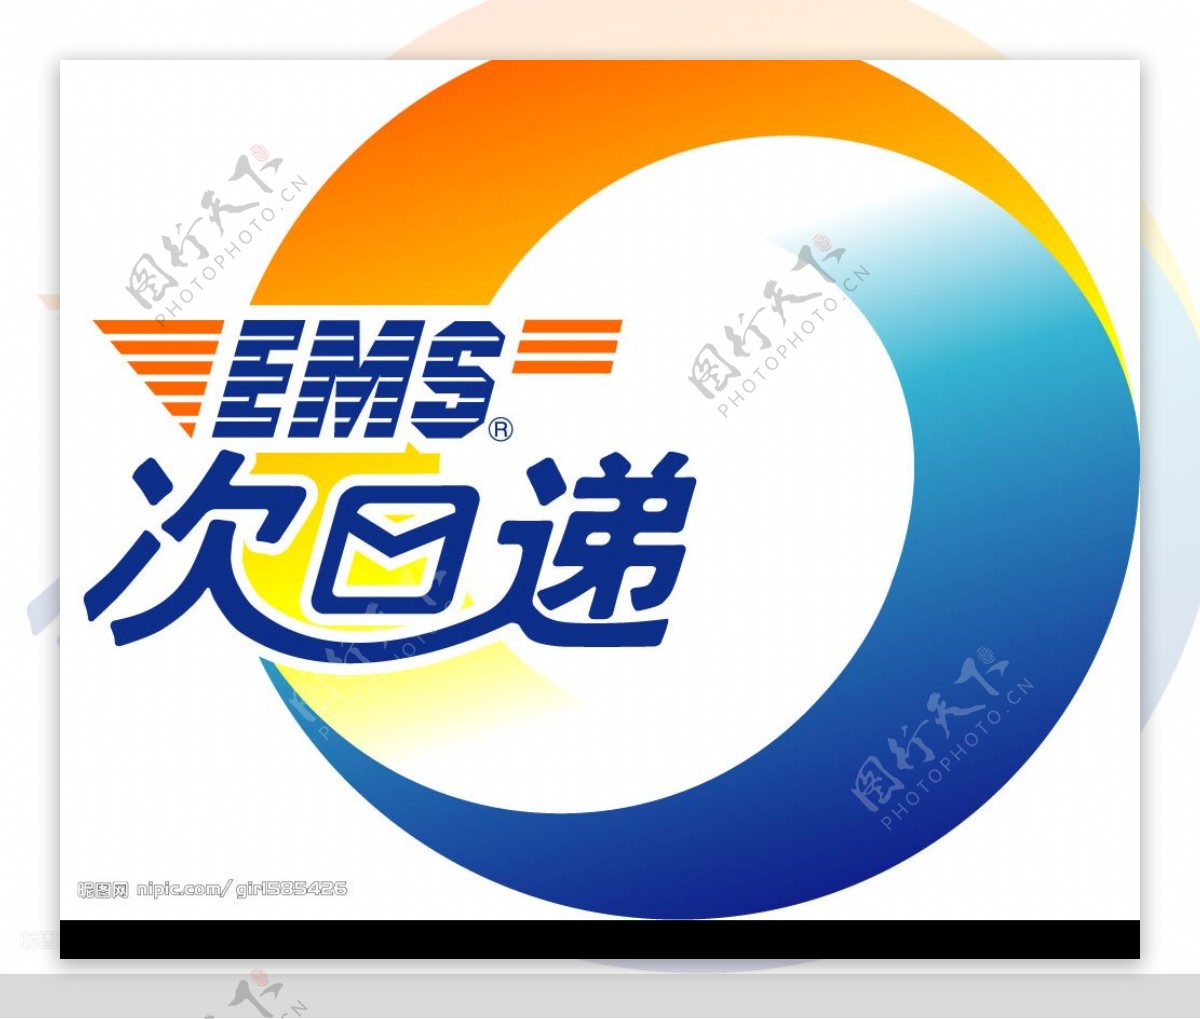 中国邮政次日递logo图片